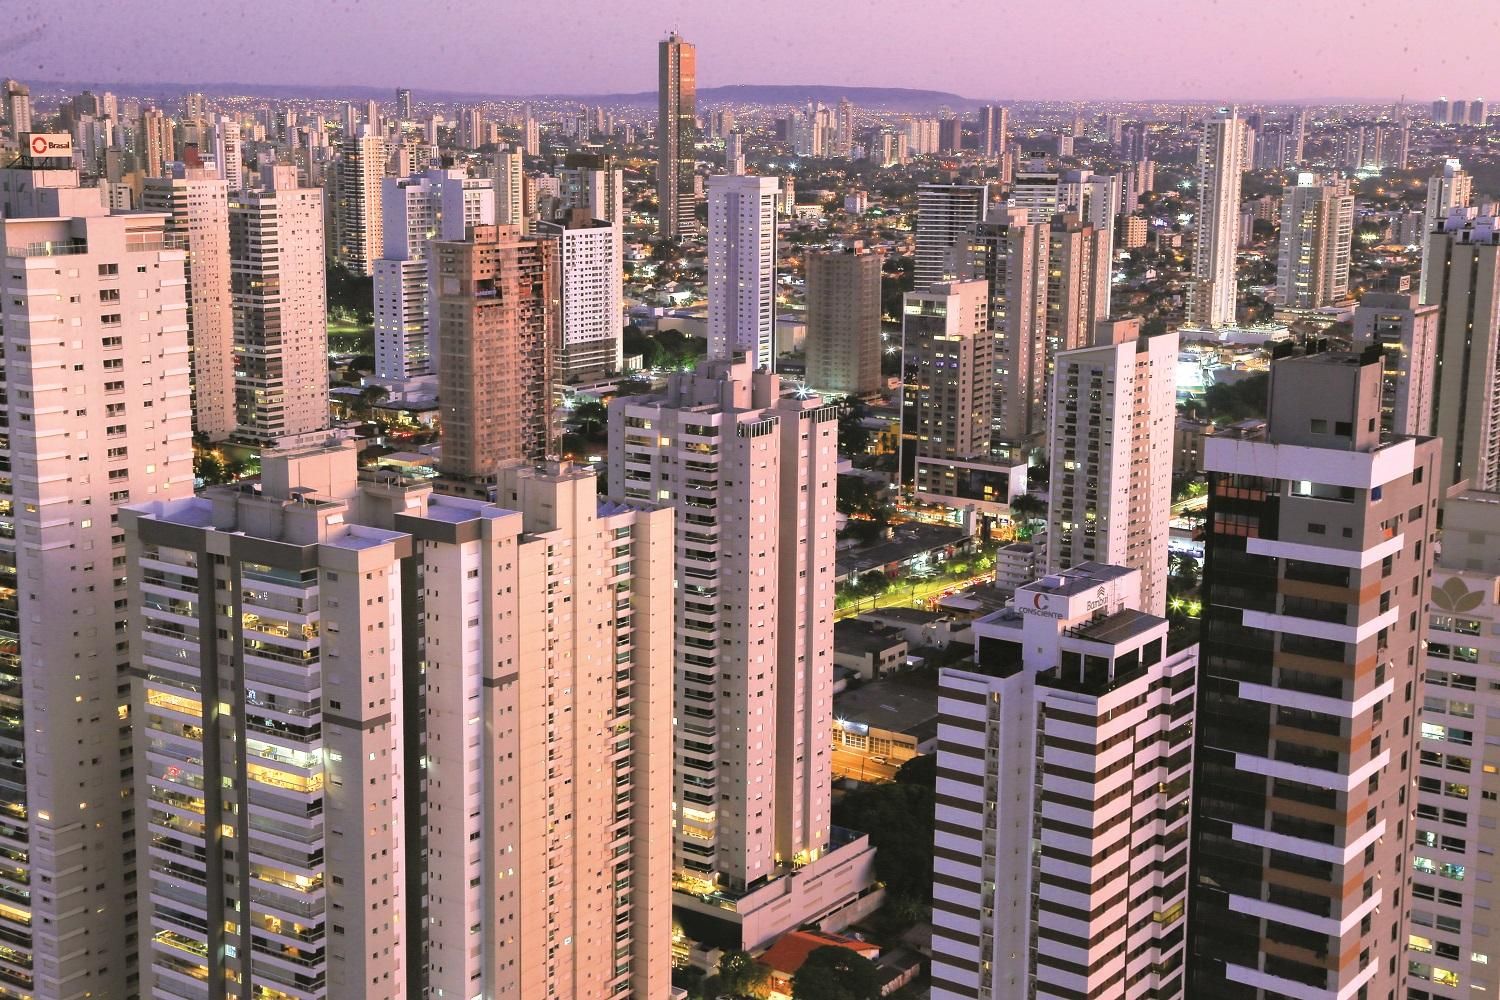 Seleção em Curitiba virou lenda urbana – Futebol Metrópole